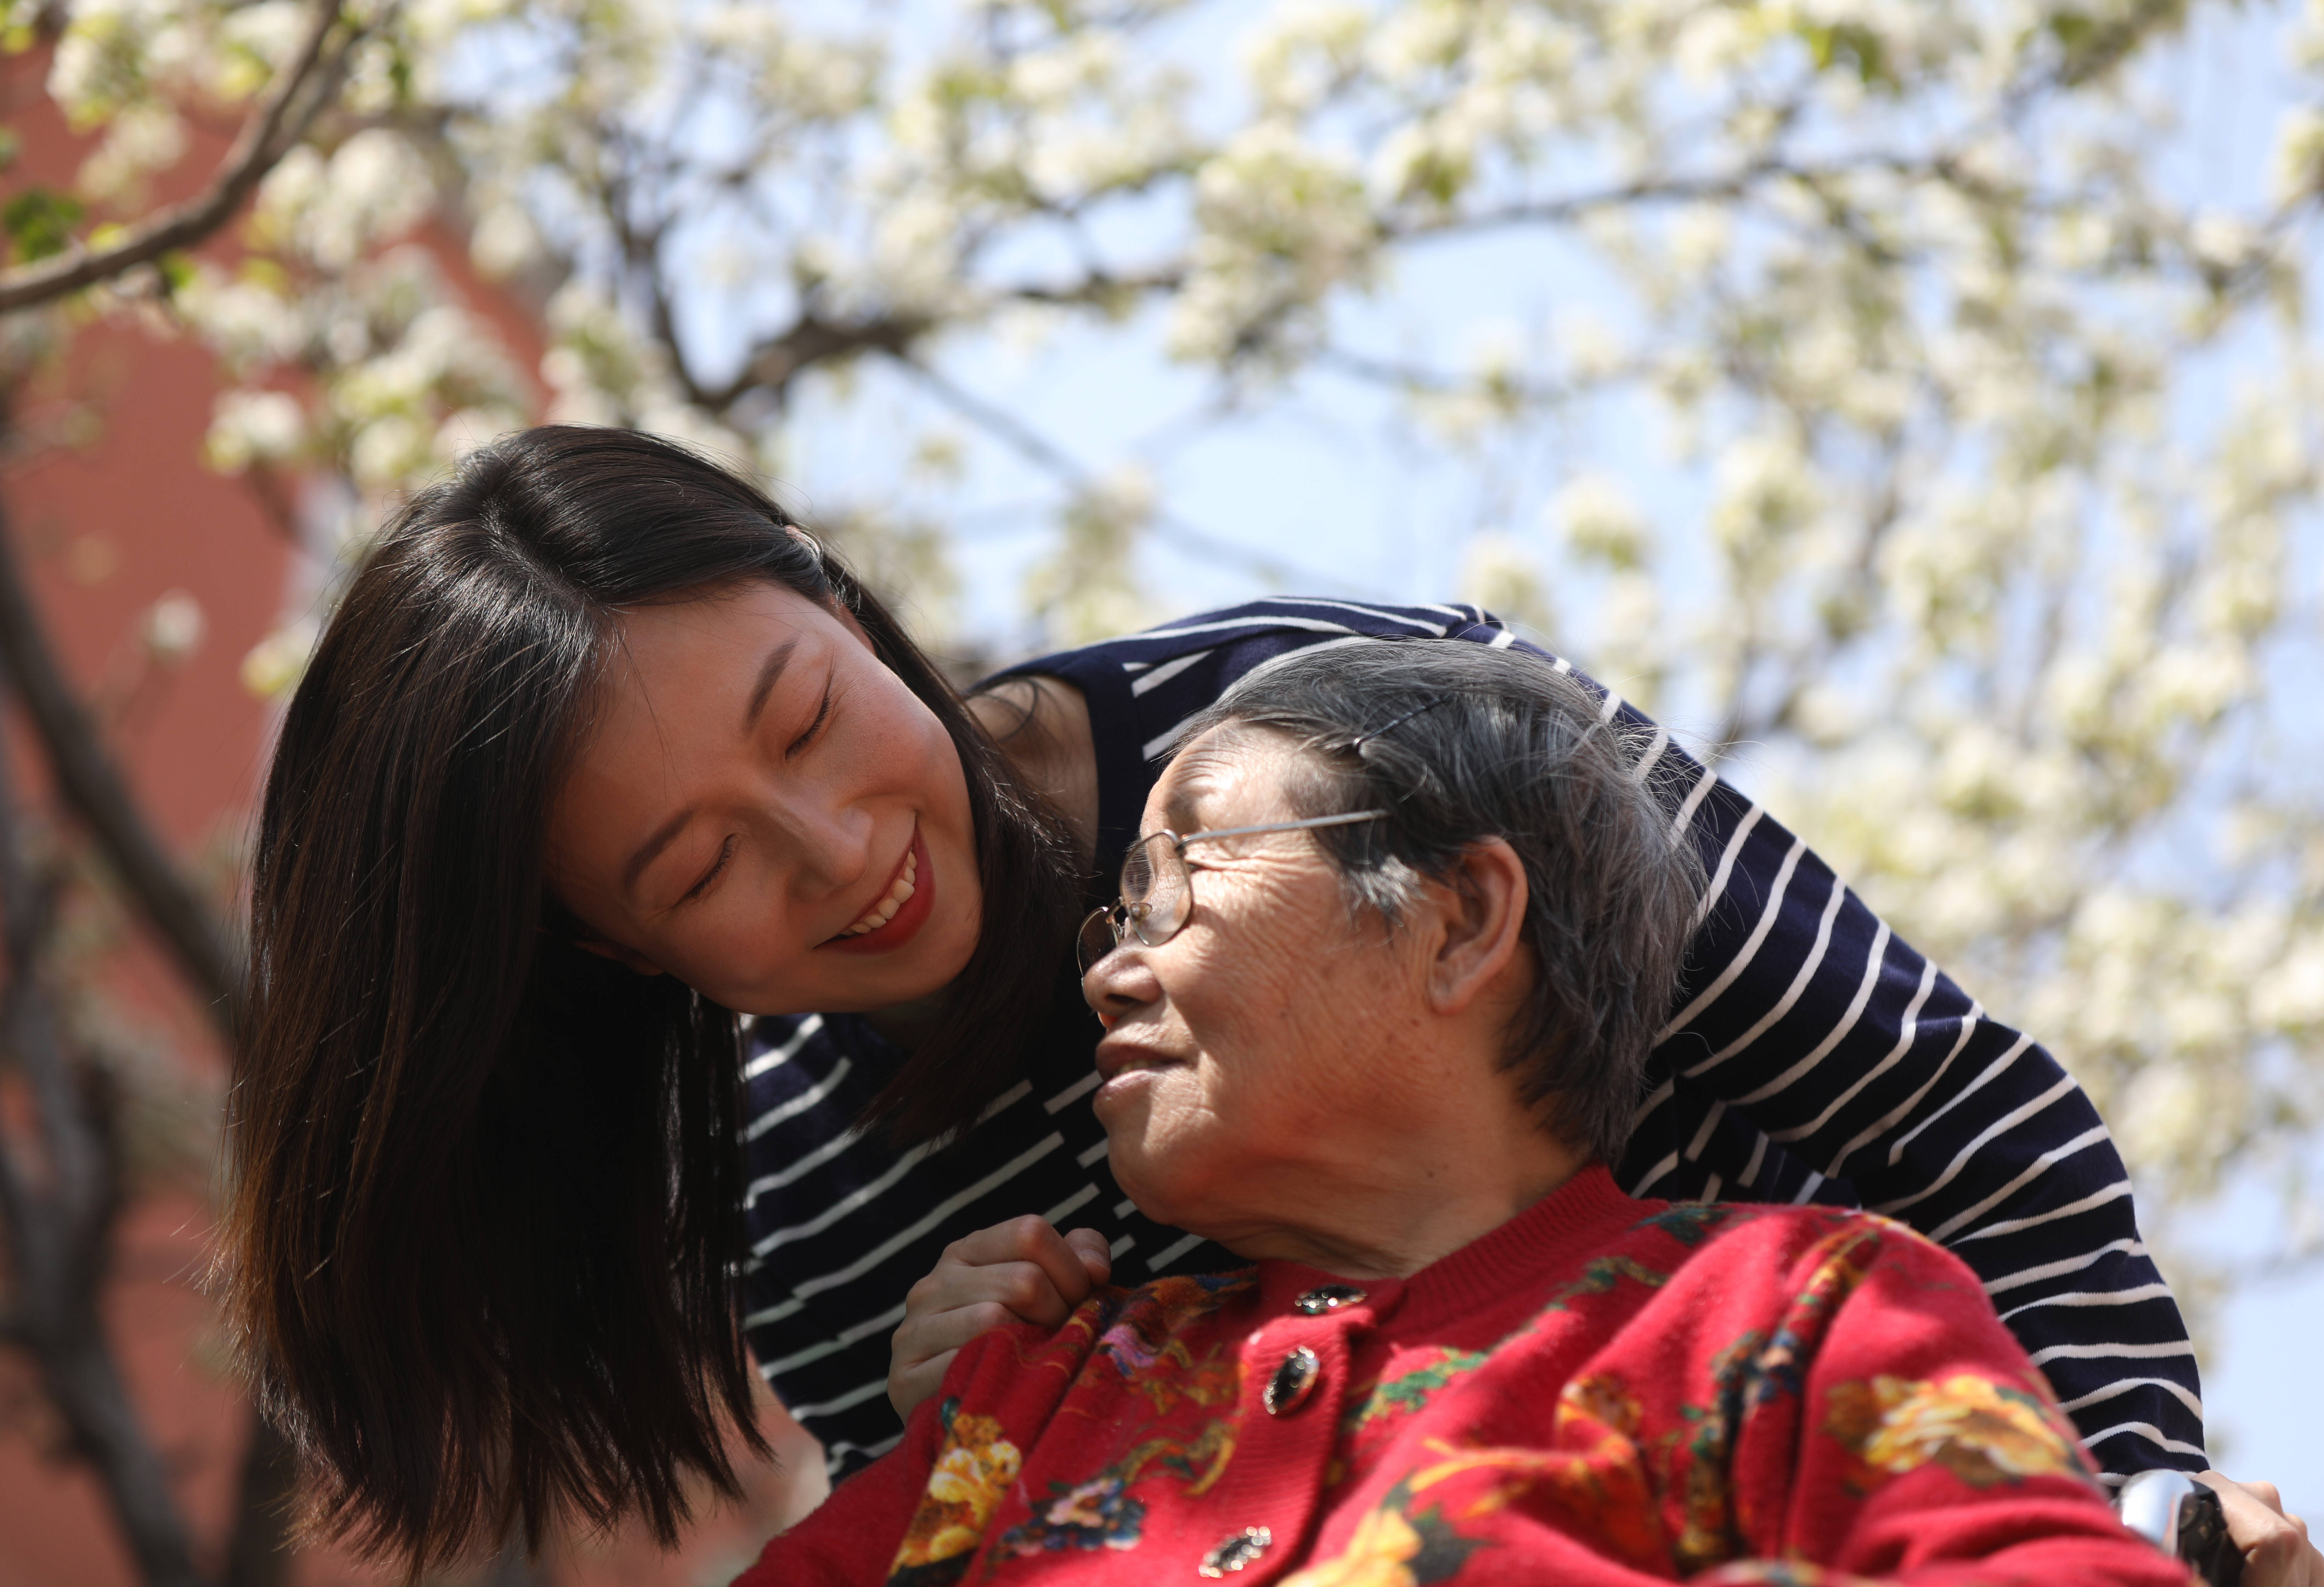 陈思陪伴过很多老人,她每天努力做的事情,就是让老人们有生活质量和